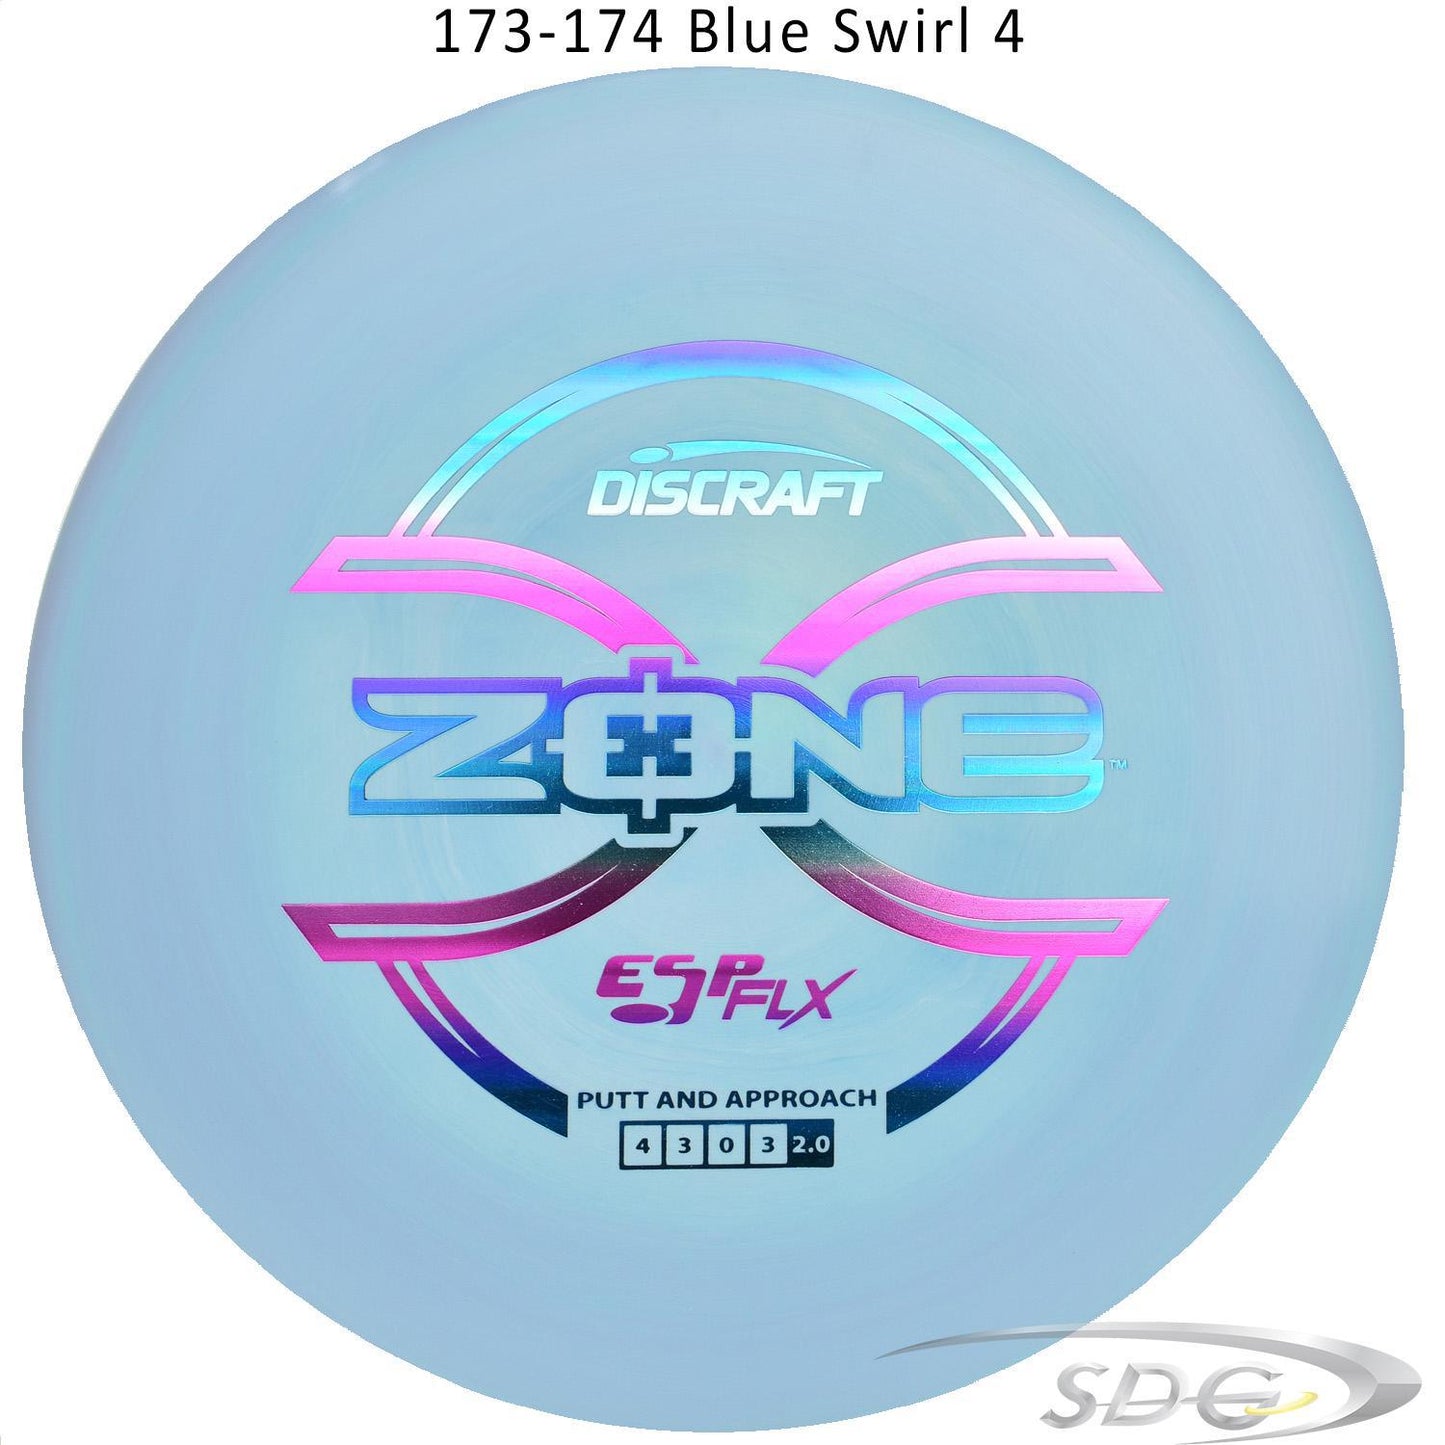 discraft-esp-flx-zone-disc-golf-putter 173-174 Blue Swirl 4 